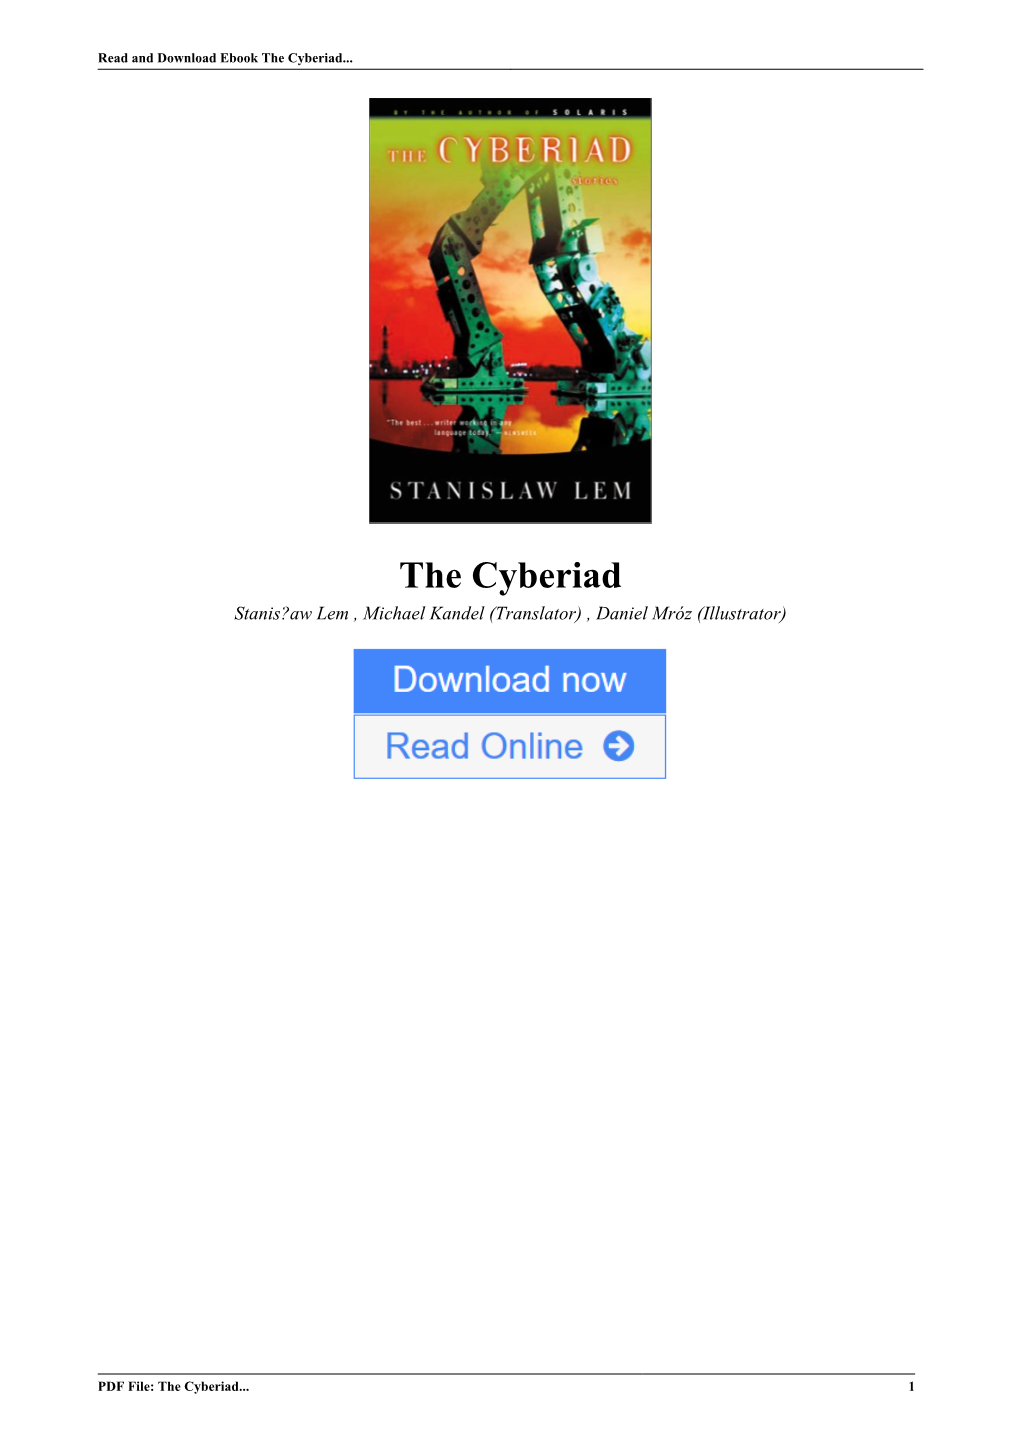 The Cyberiad by Stanisław Lem , Michael Kandel (Translator